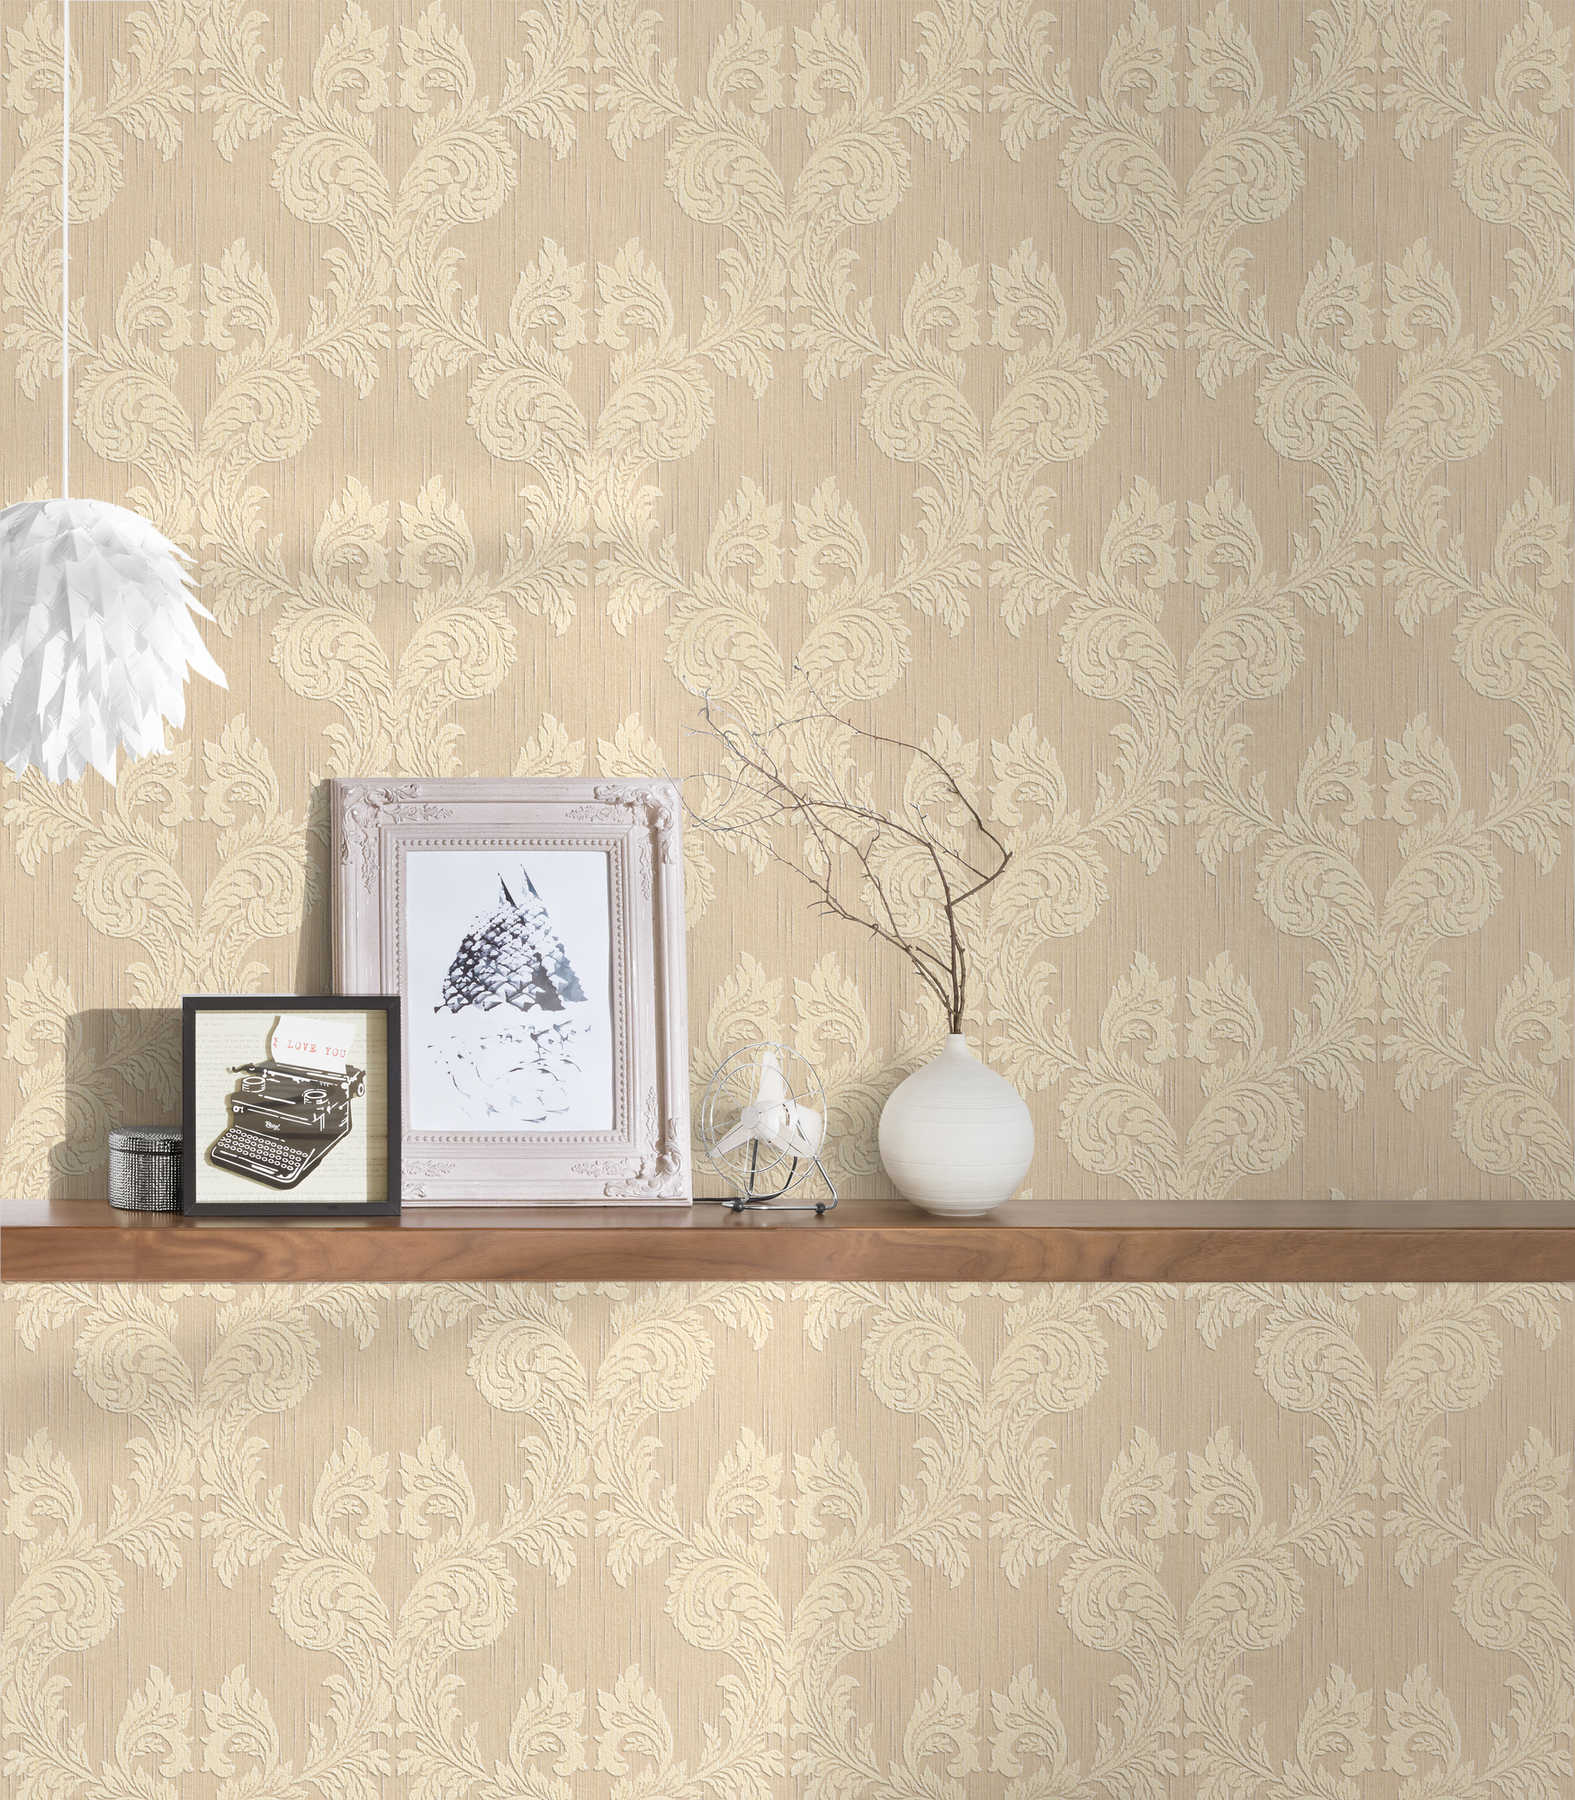             Behang met textiellook en ornament patroon in klassieke stijl - beige
        